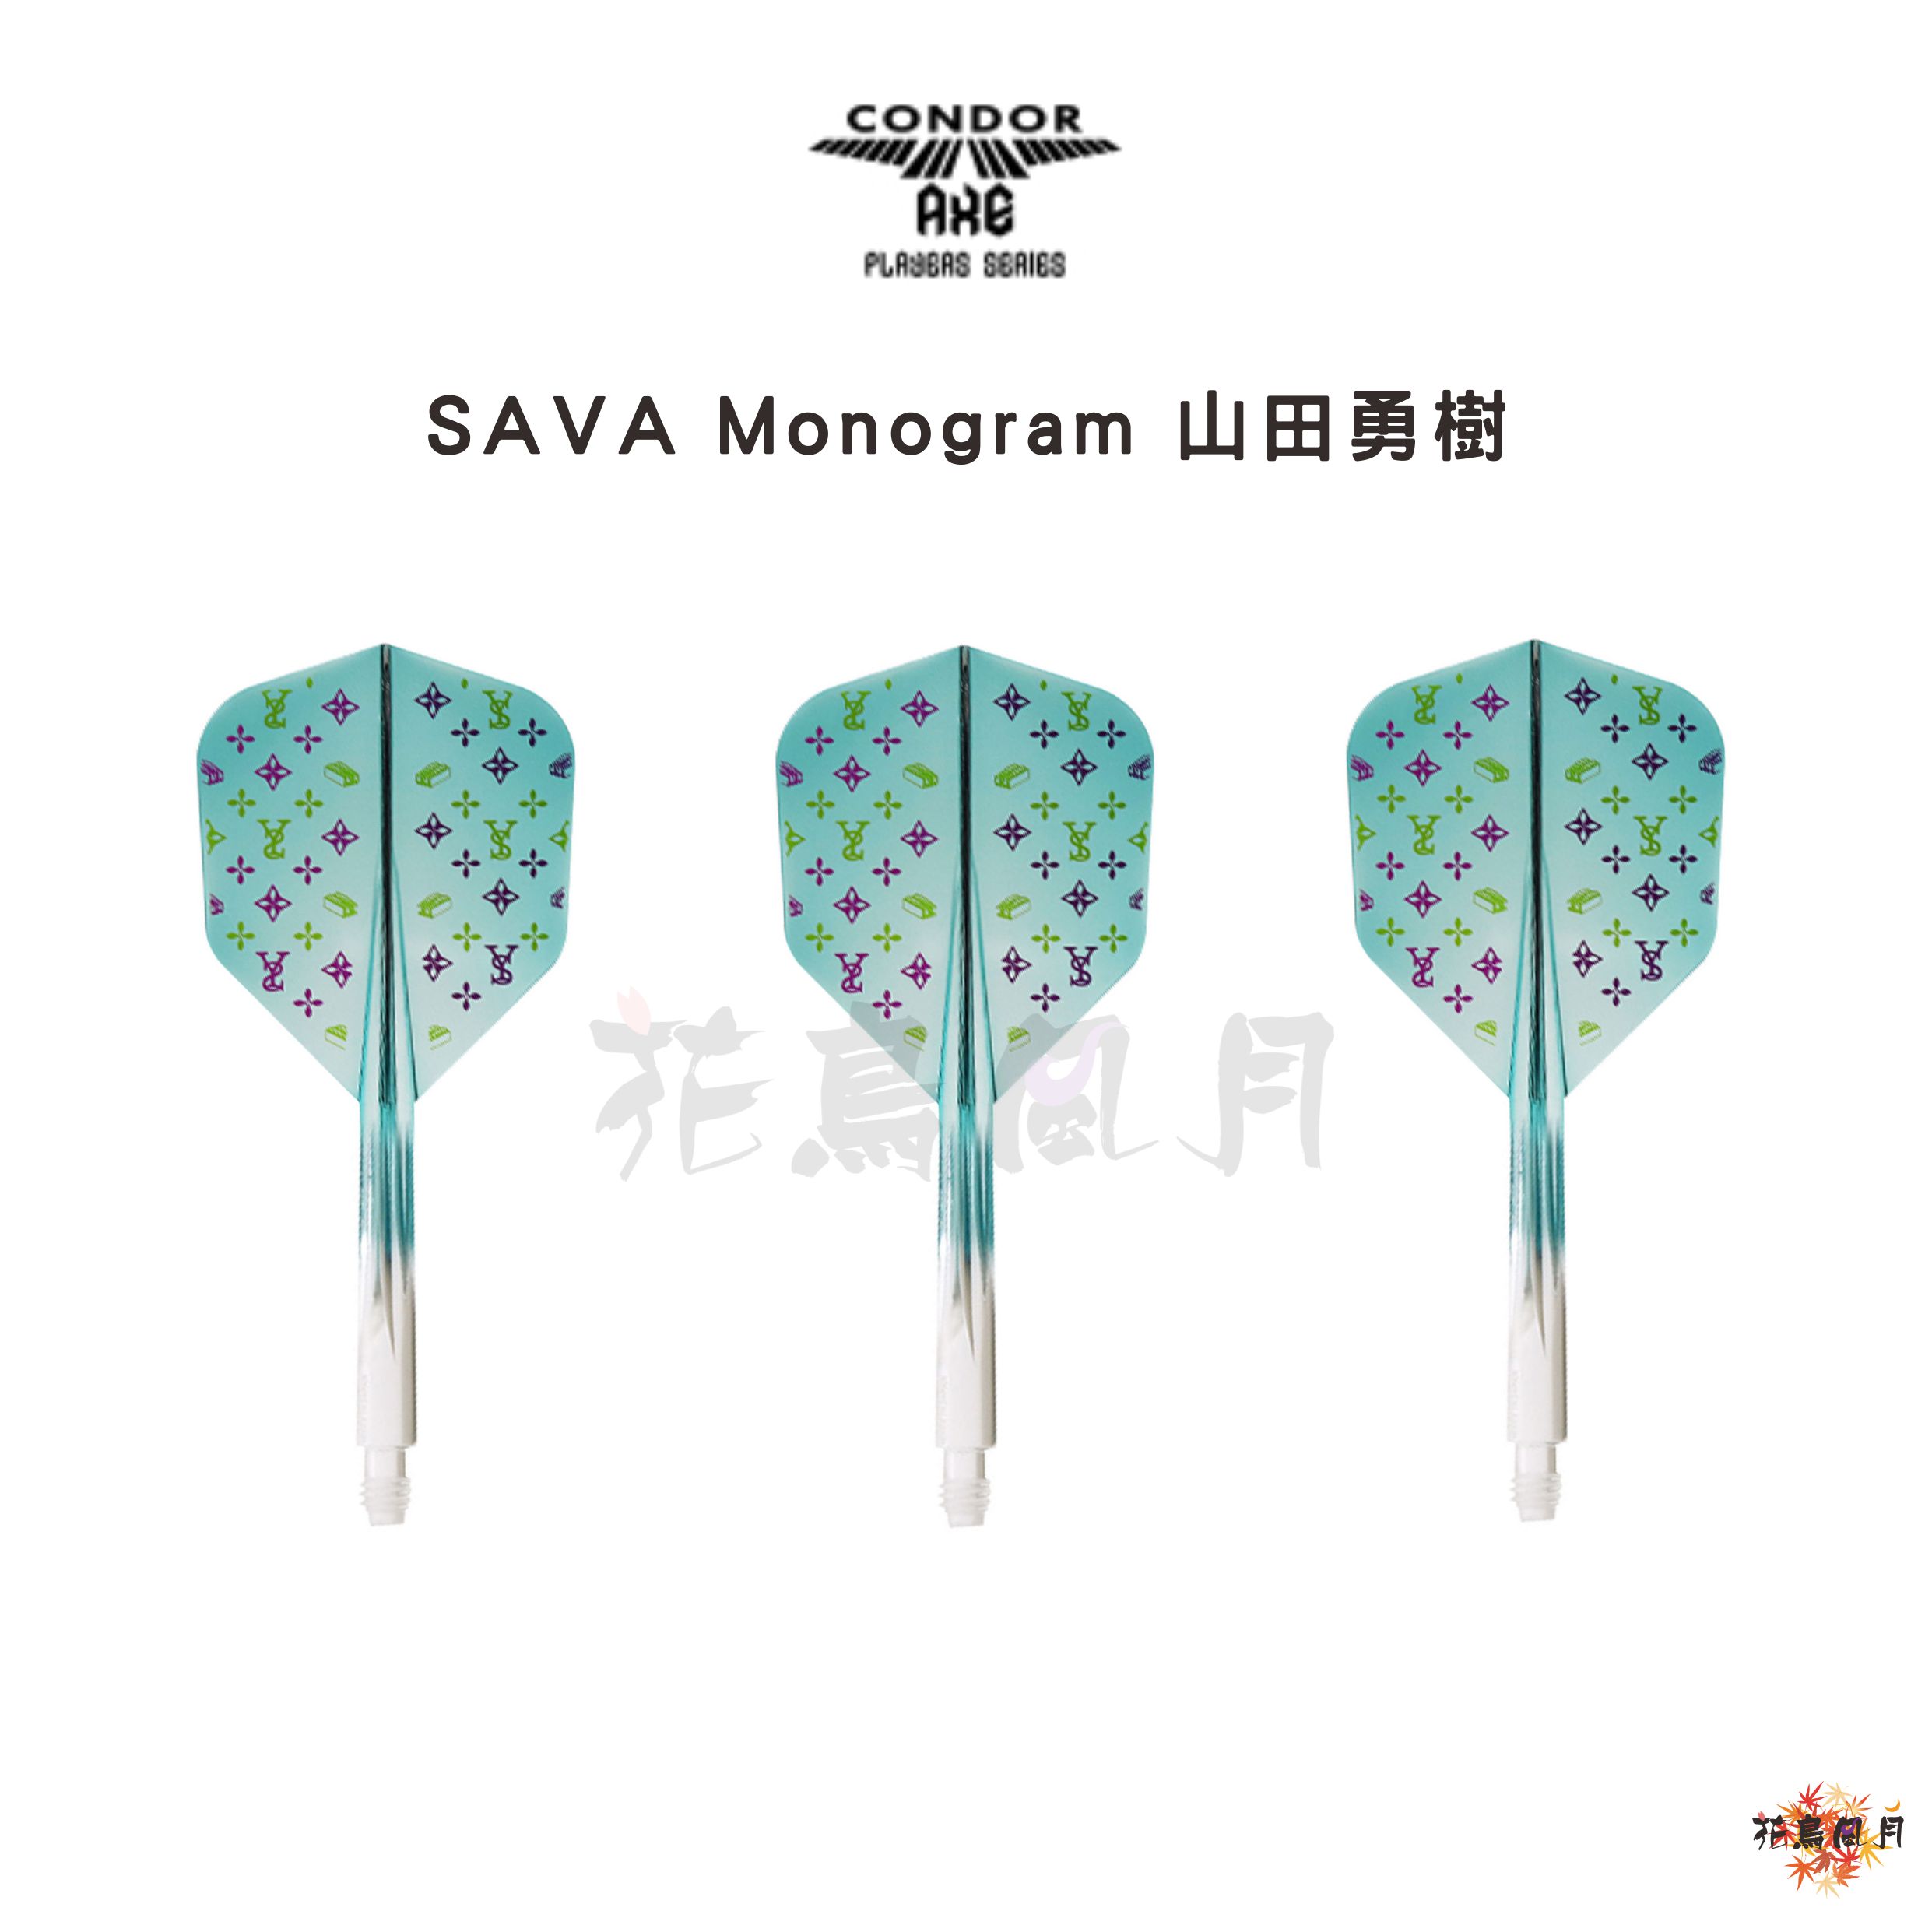 SAVA-Monogramサヴァモノグラム-スモール-エメラルドグリーングラデーション-山田勇樹.jpg